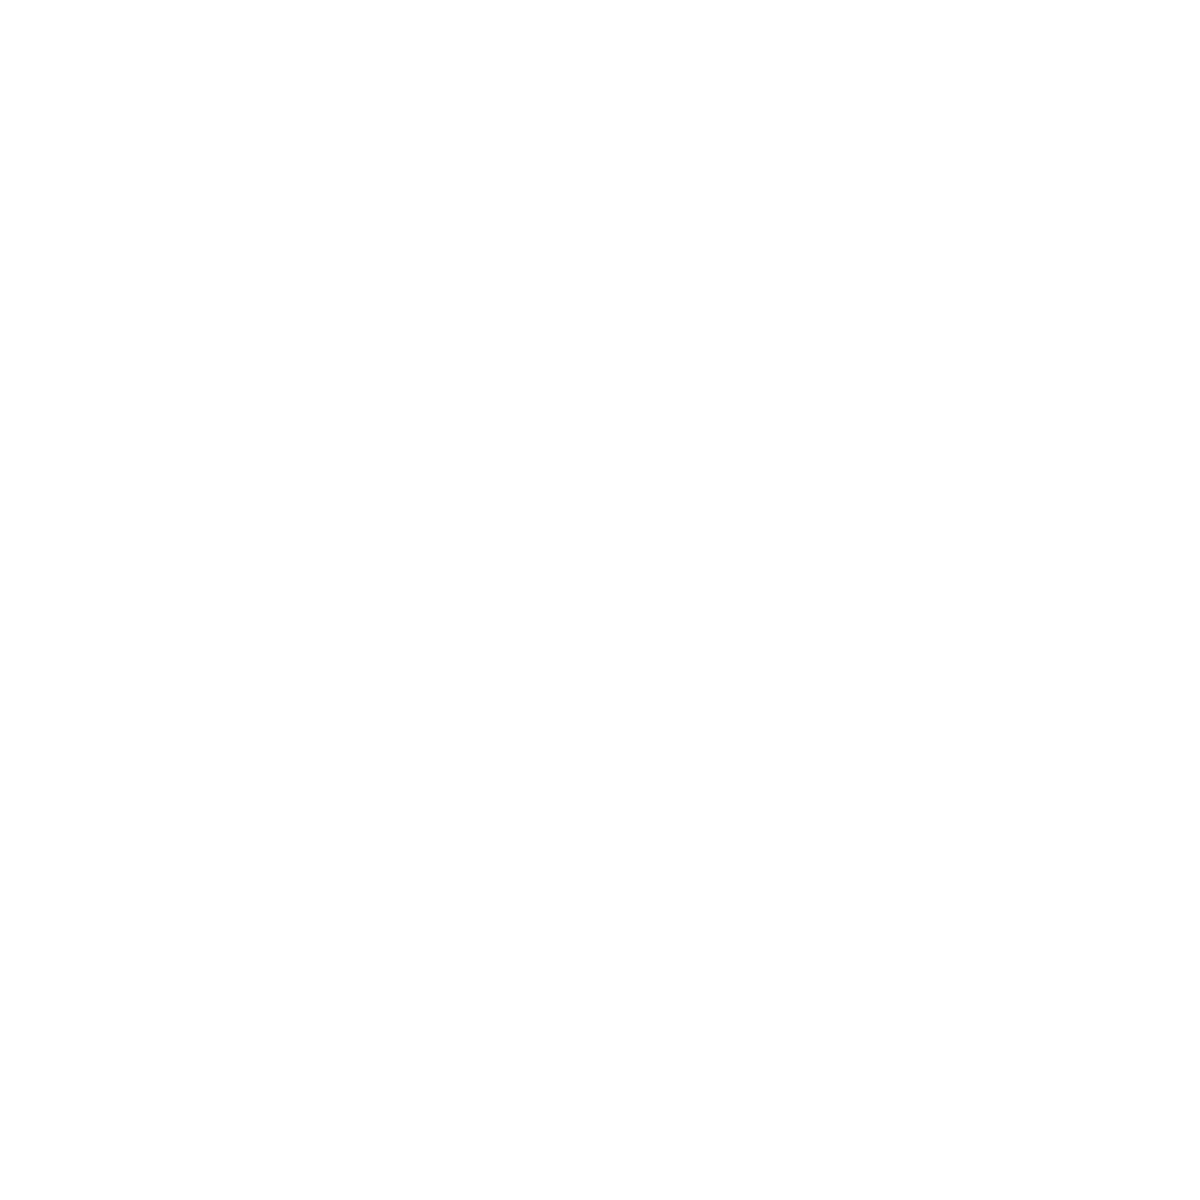 Hagan